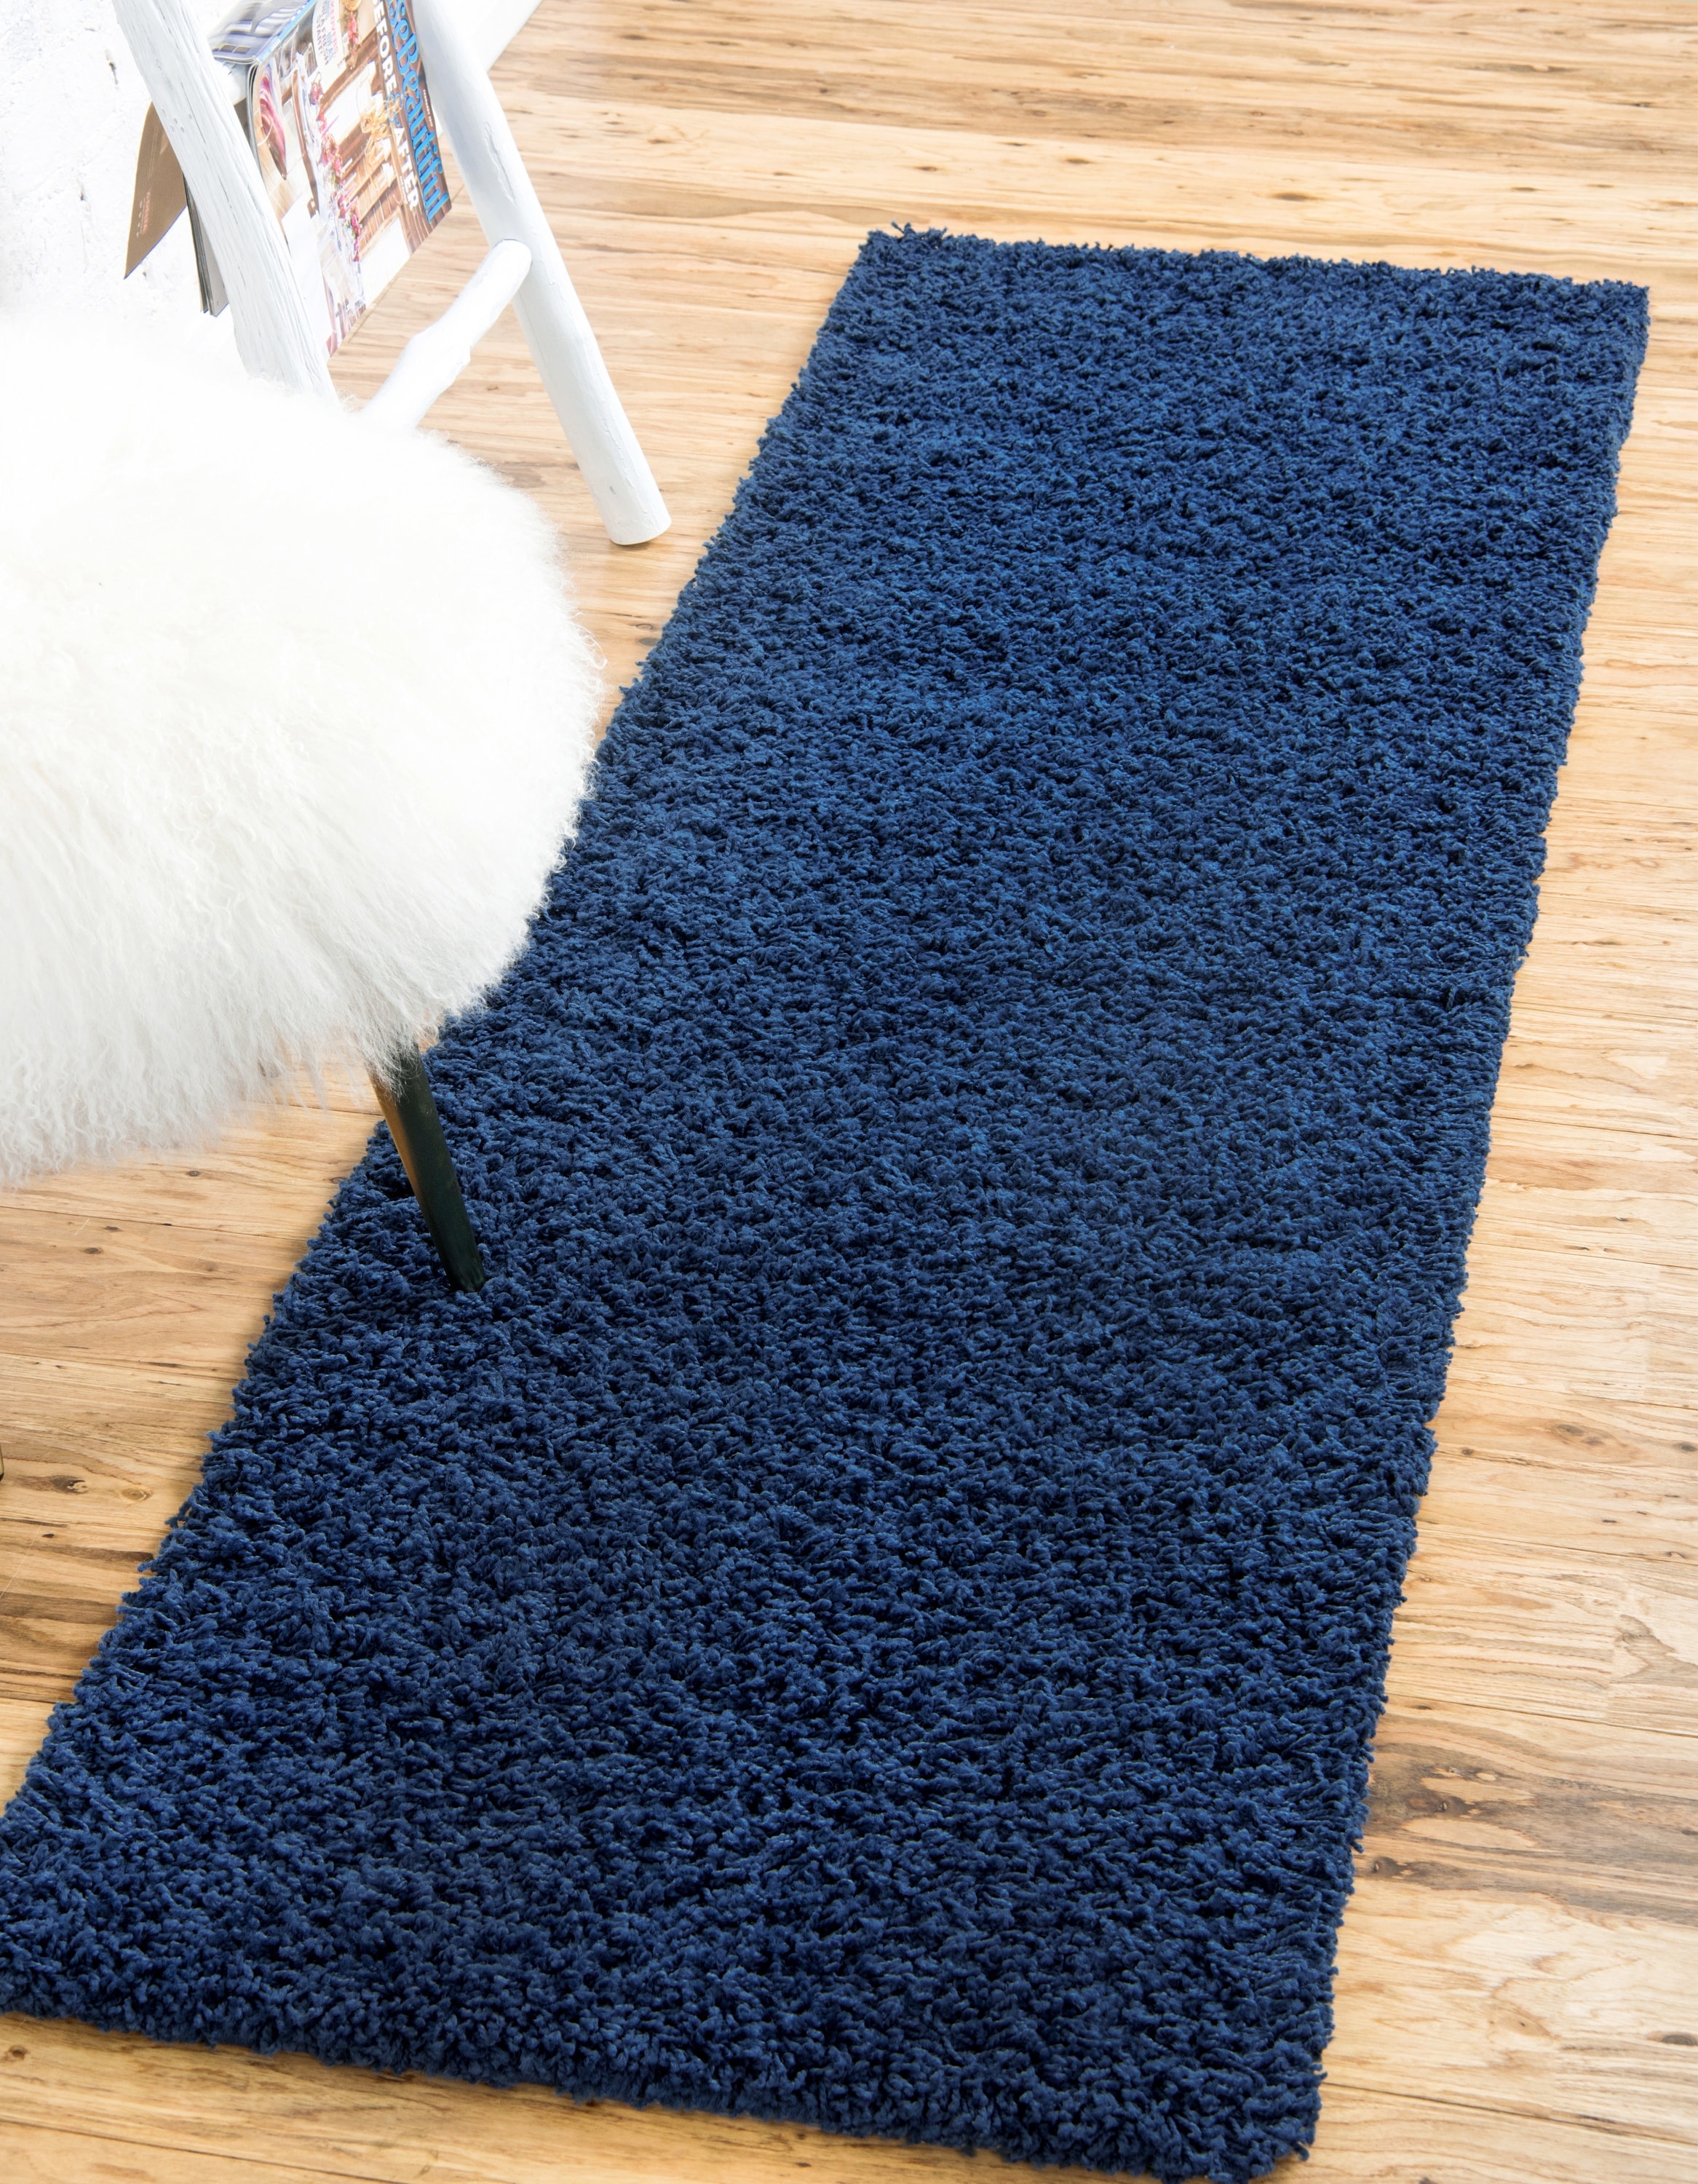 Image of 2c shag rug navy blue